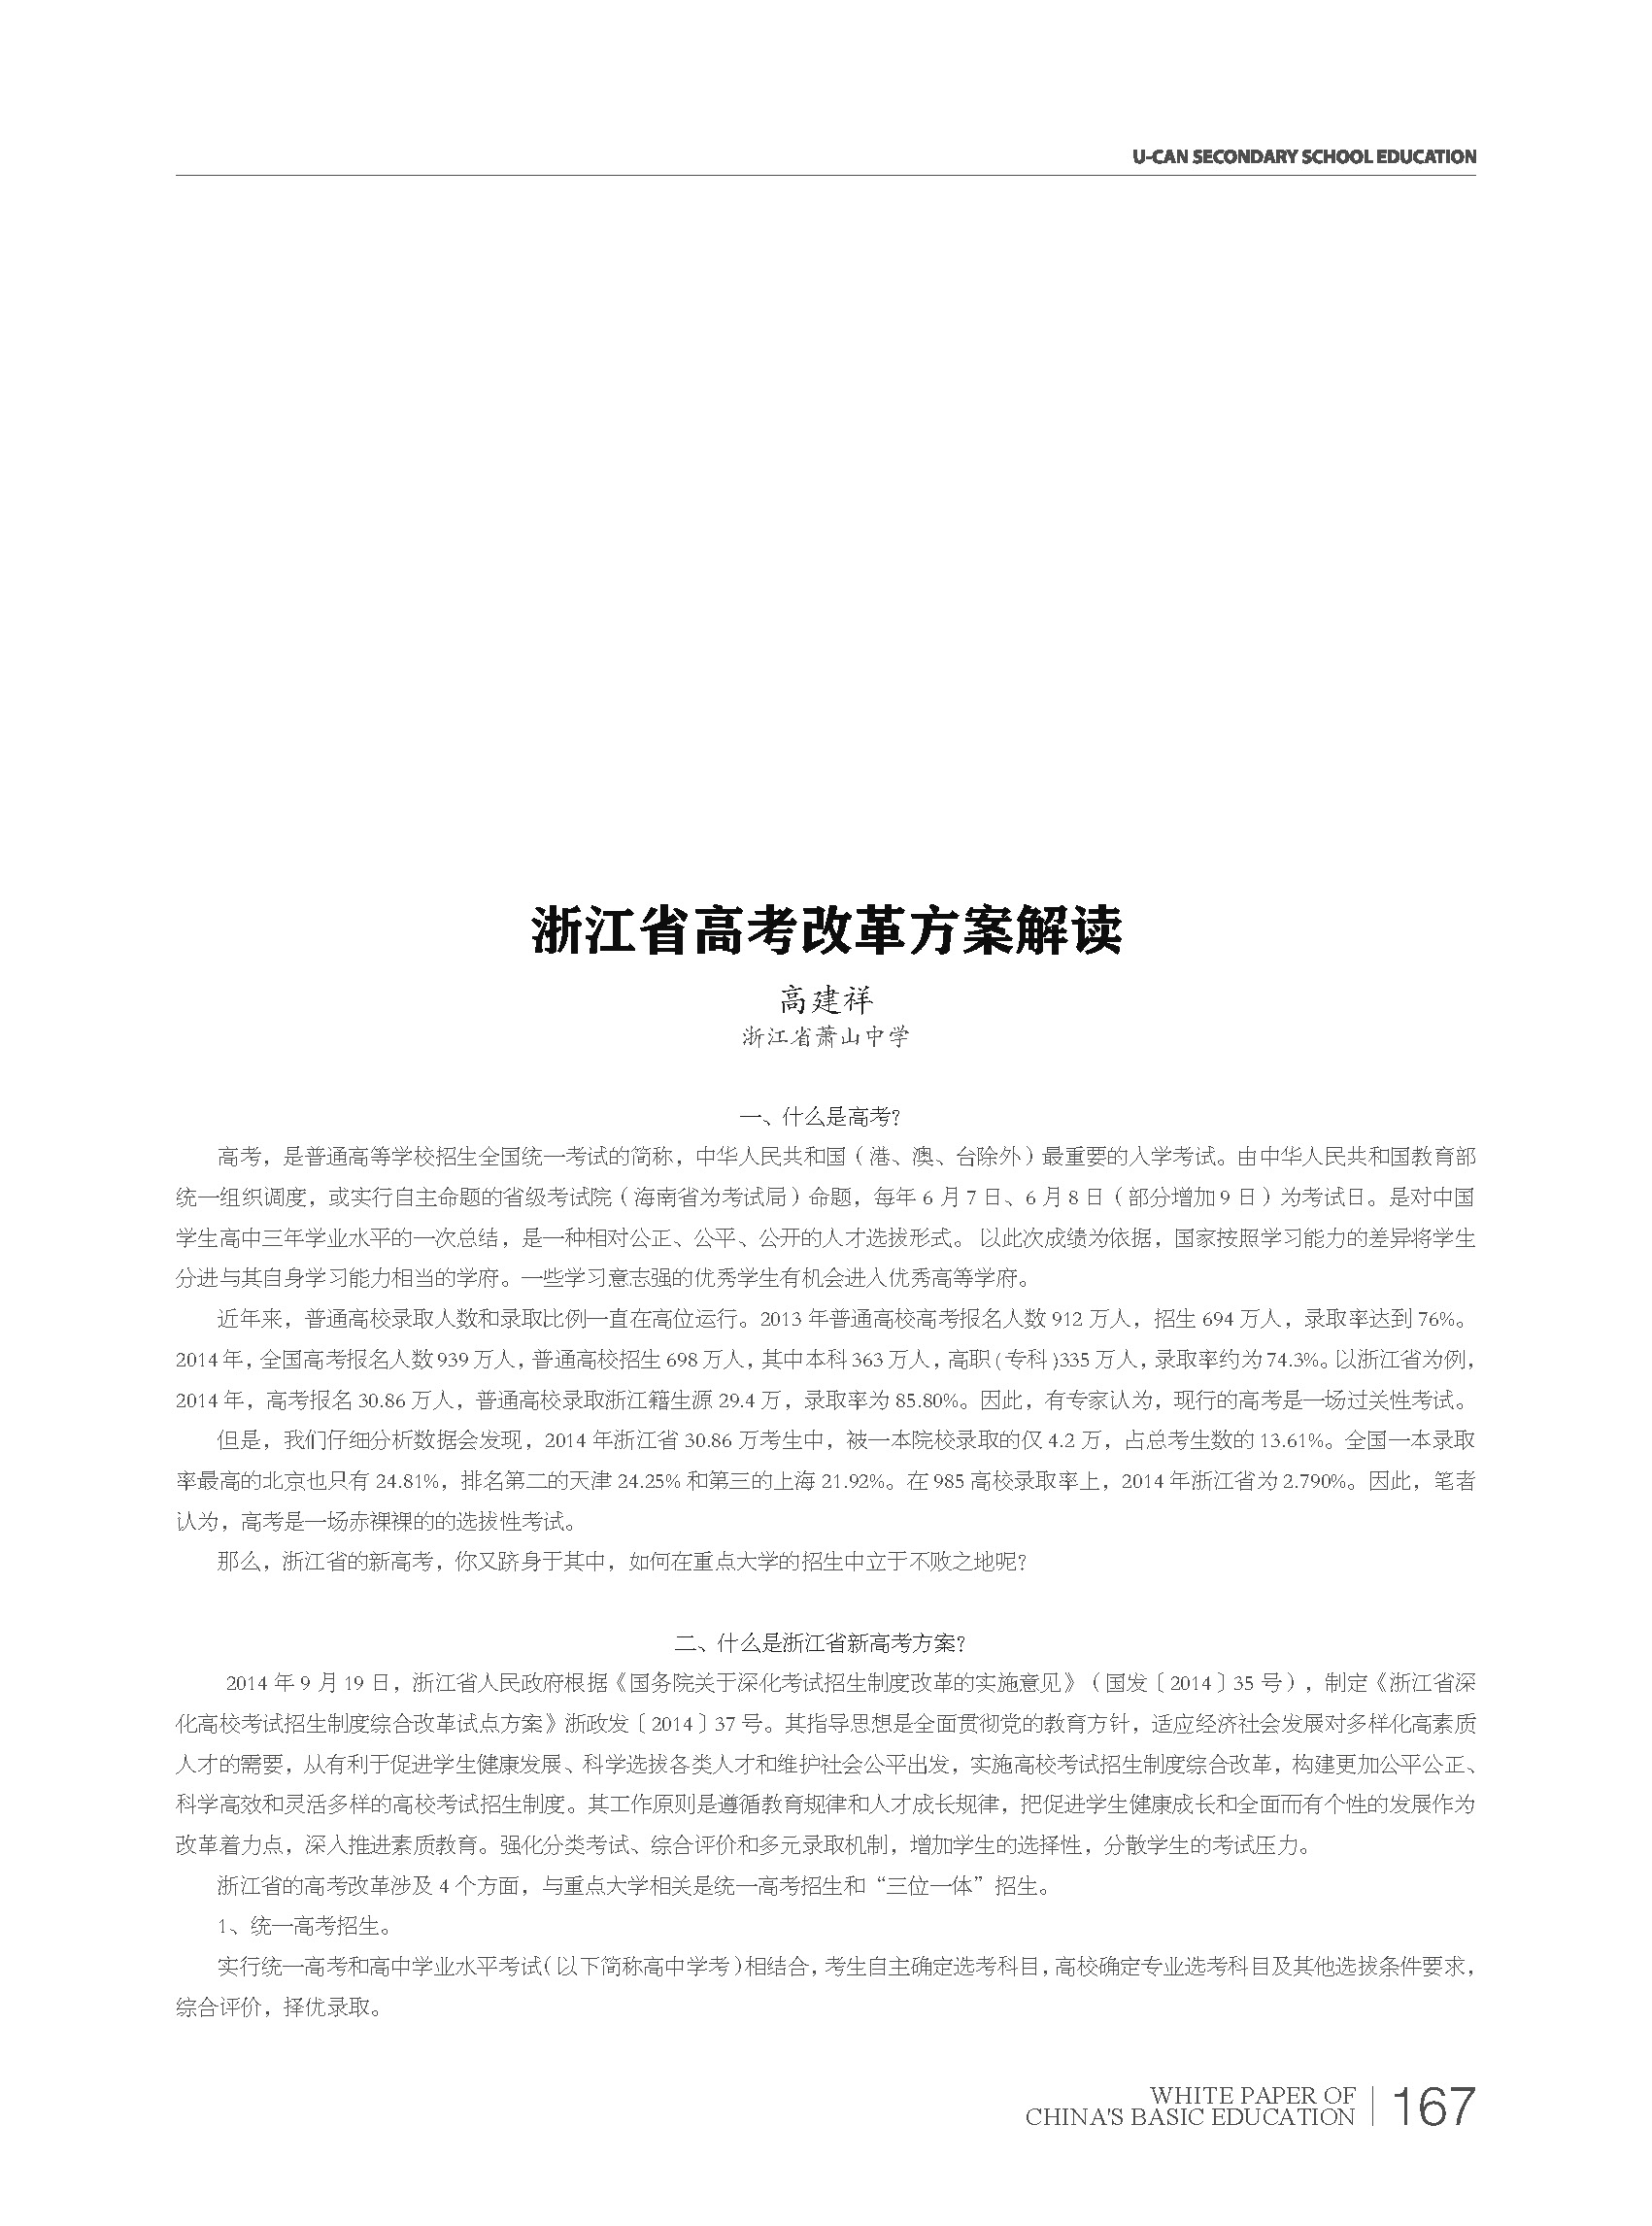 2015基础教育白皮书:浙江省高考改革方案解读